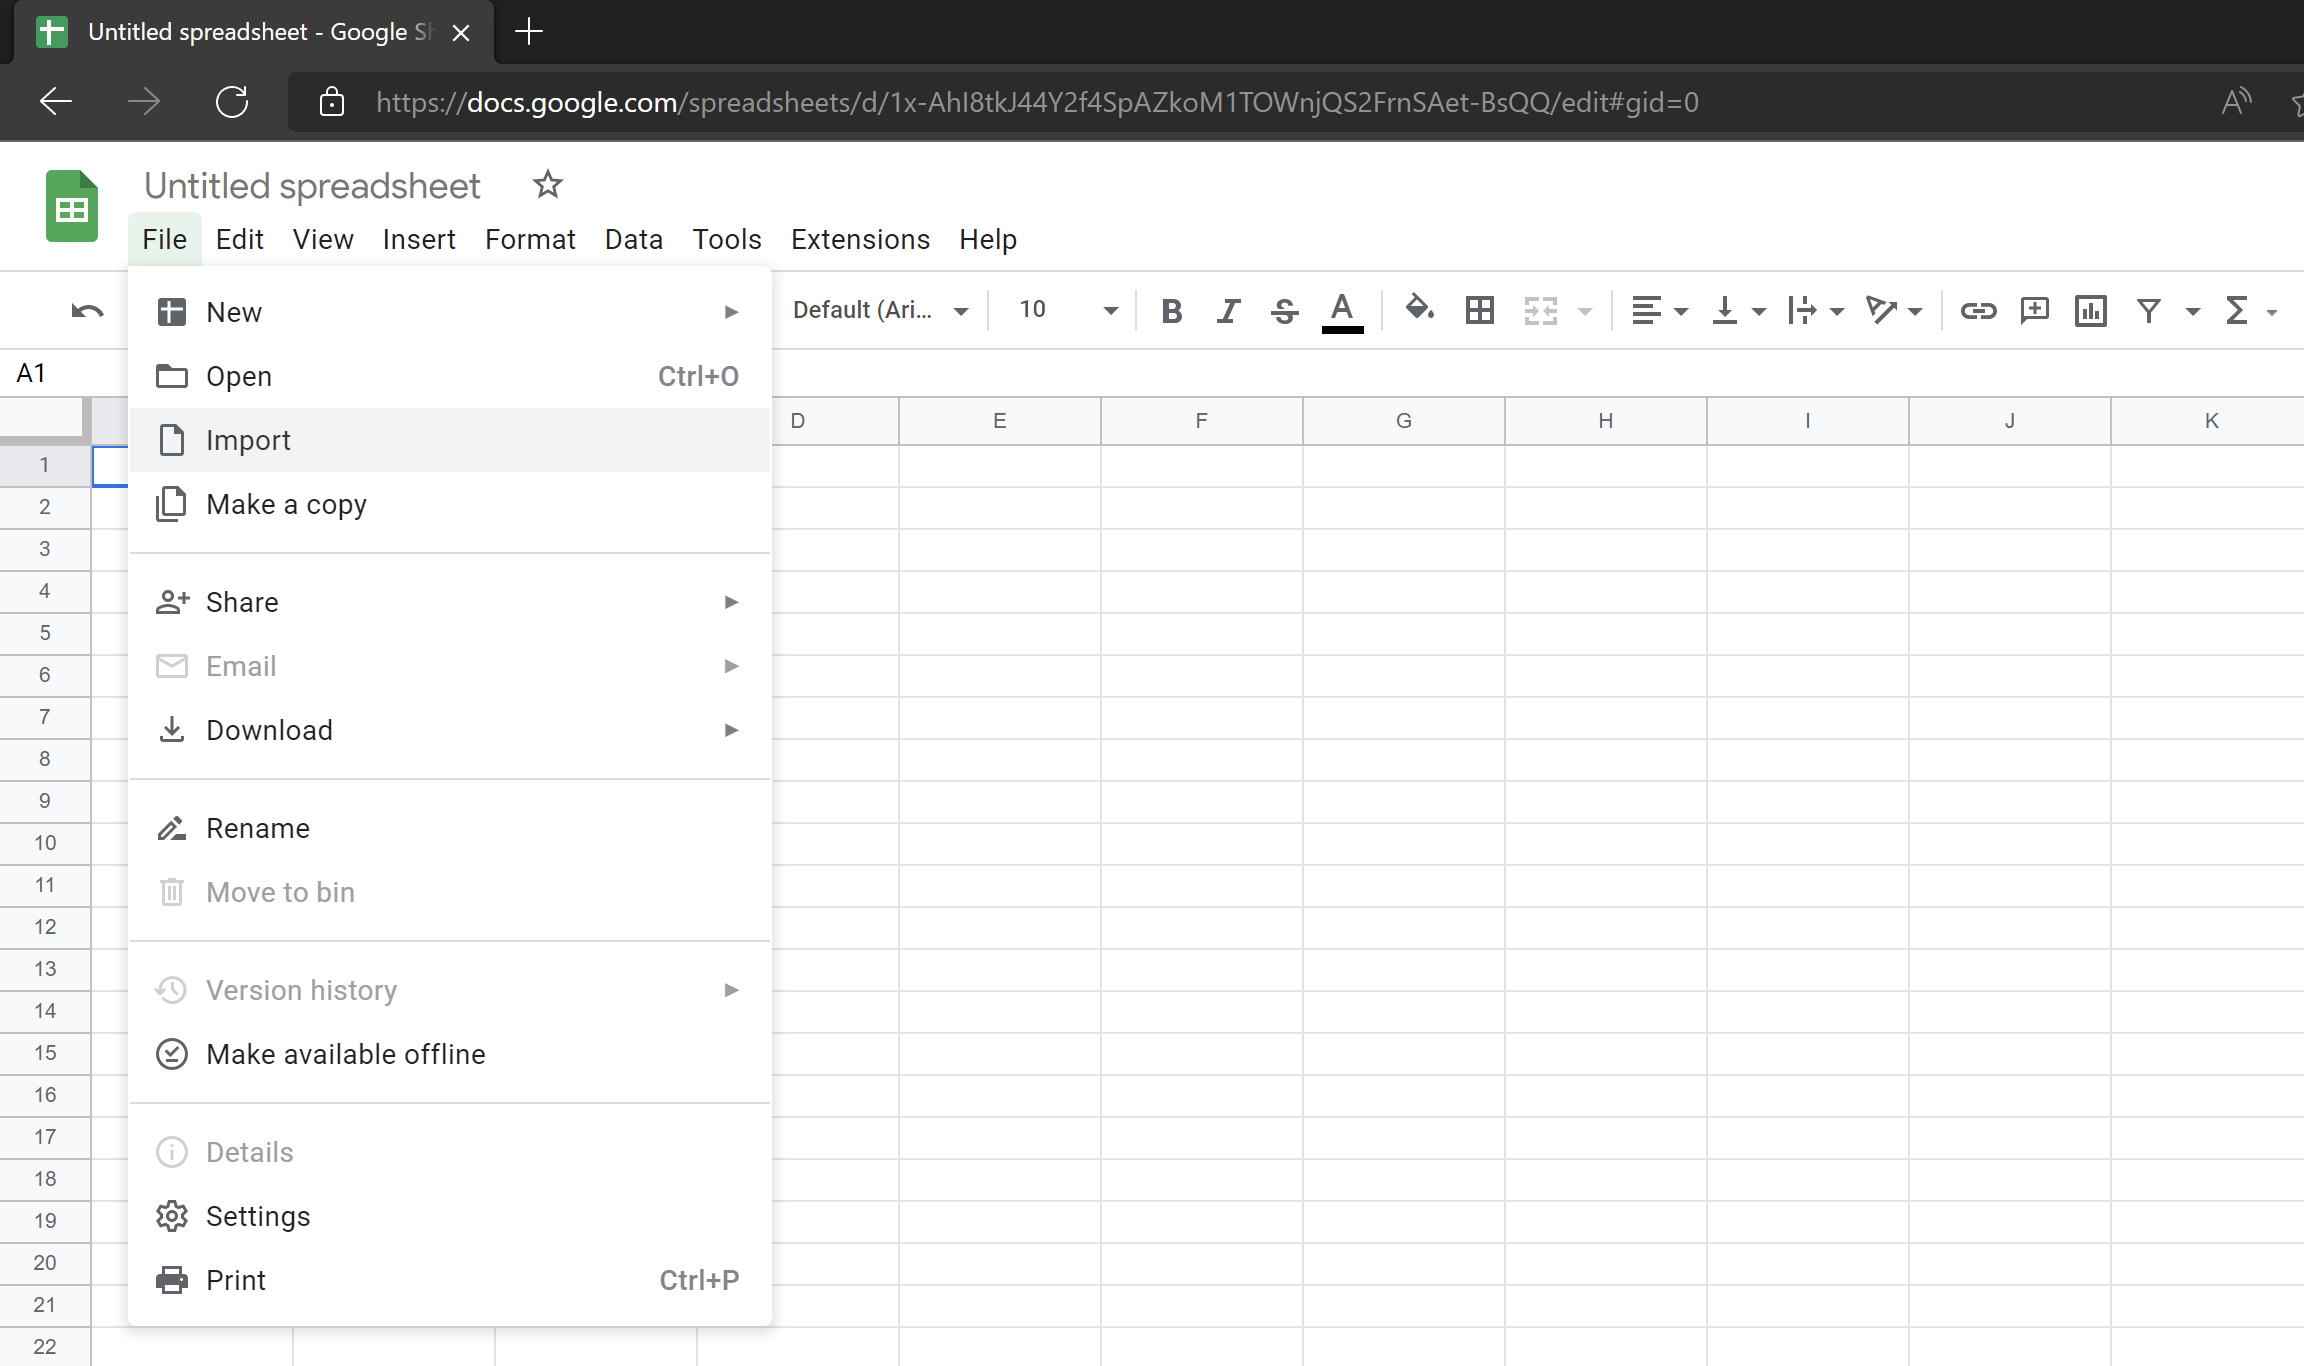 การ Import ข้อมูลจาก Excel หรือ CSV เข้ามาใน Google Sheets